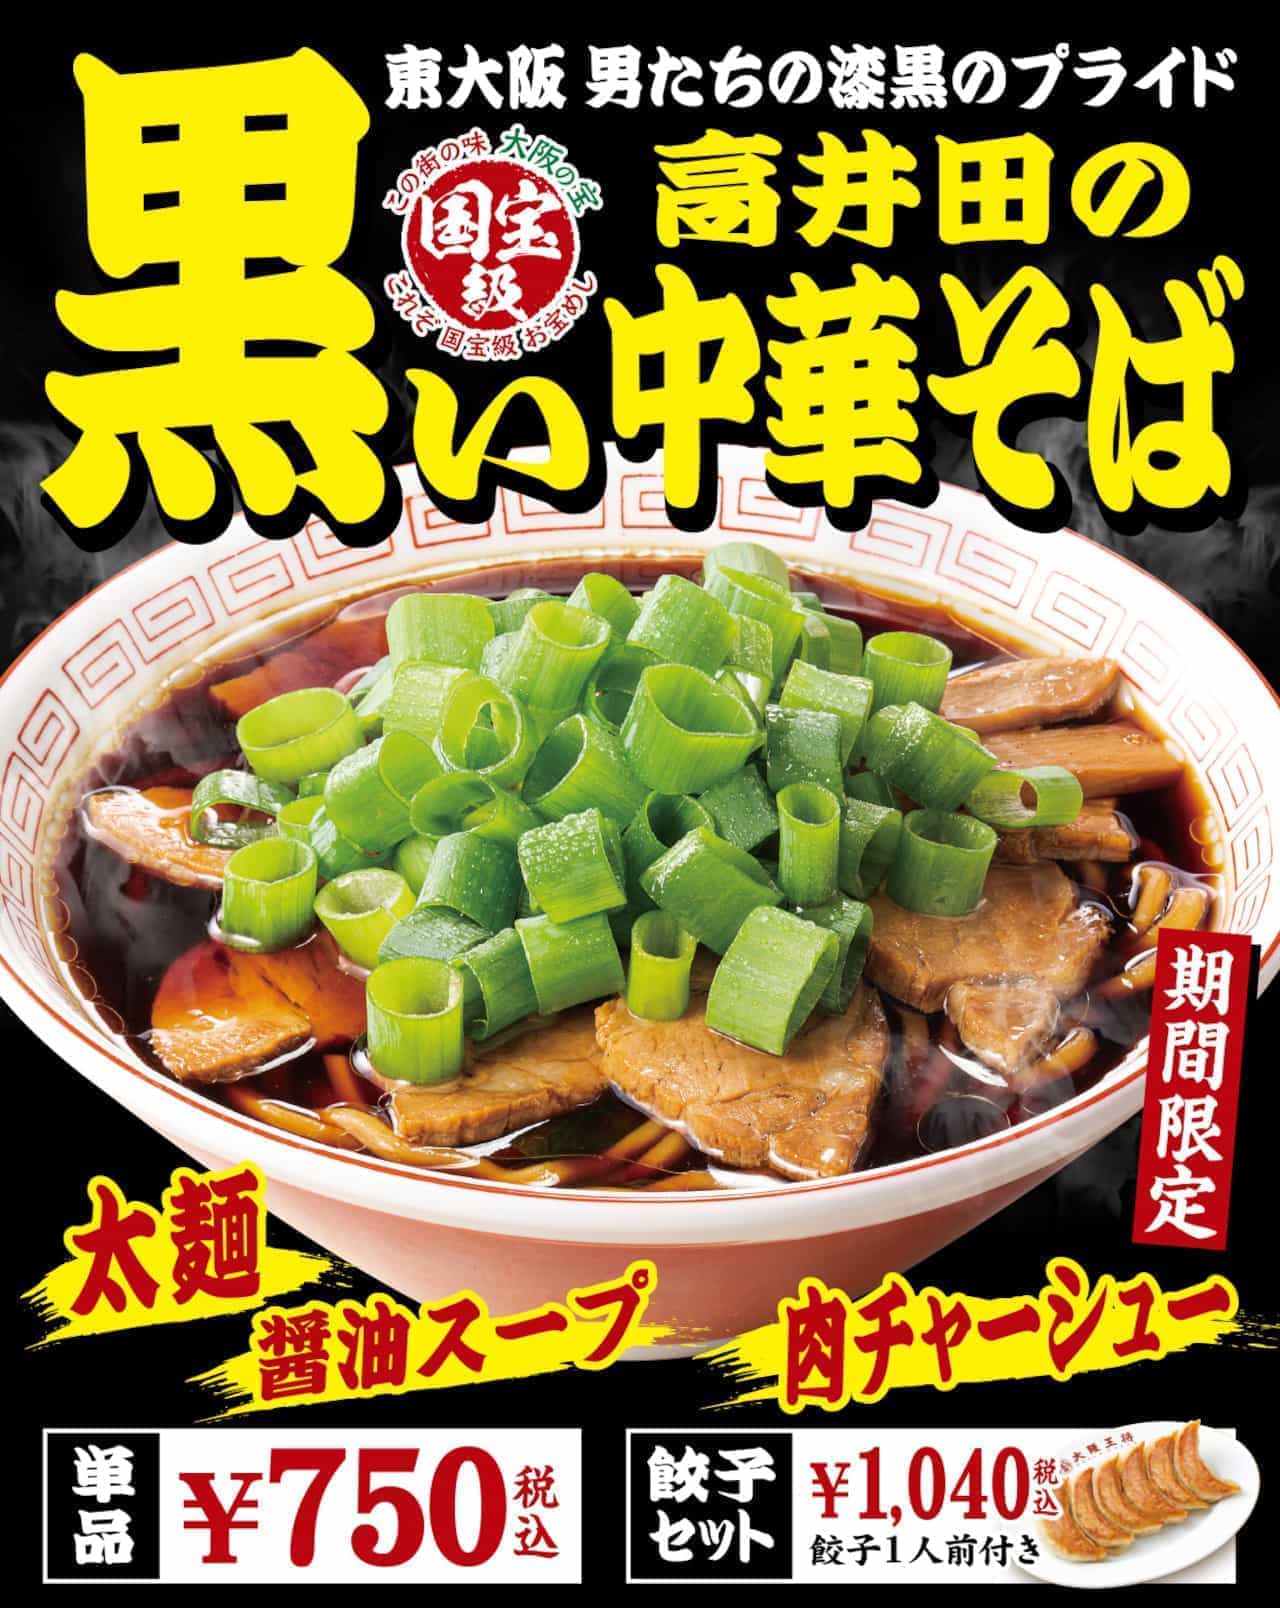 Osaka Osho "Black Chinese Soba Noodles in Takaida